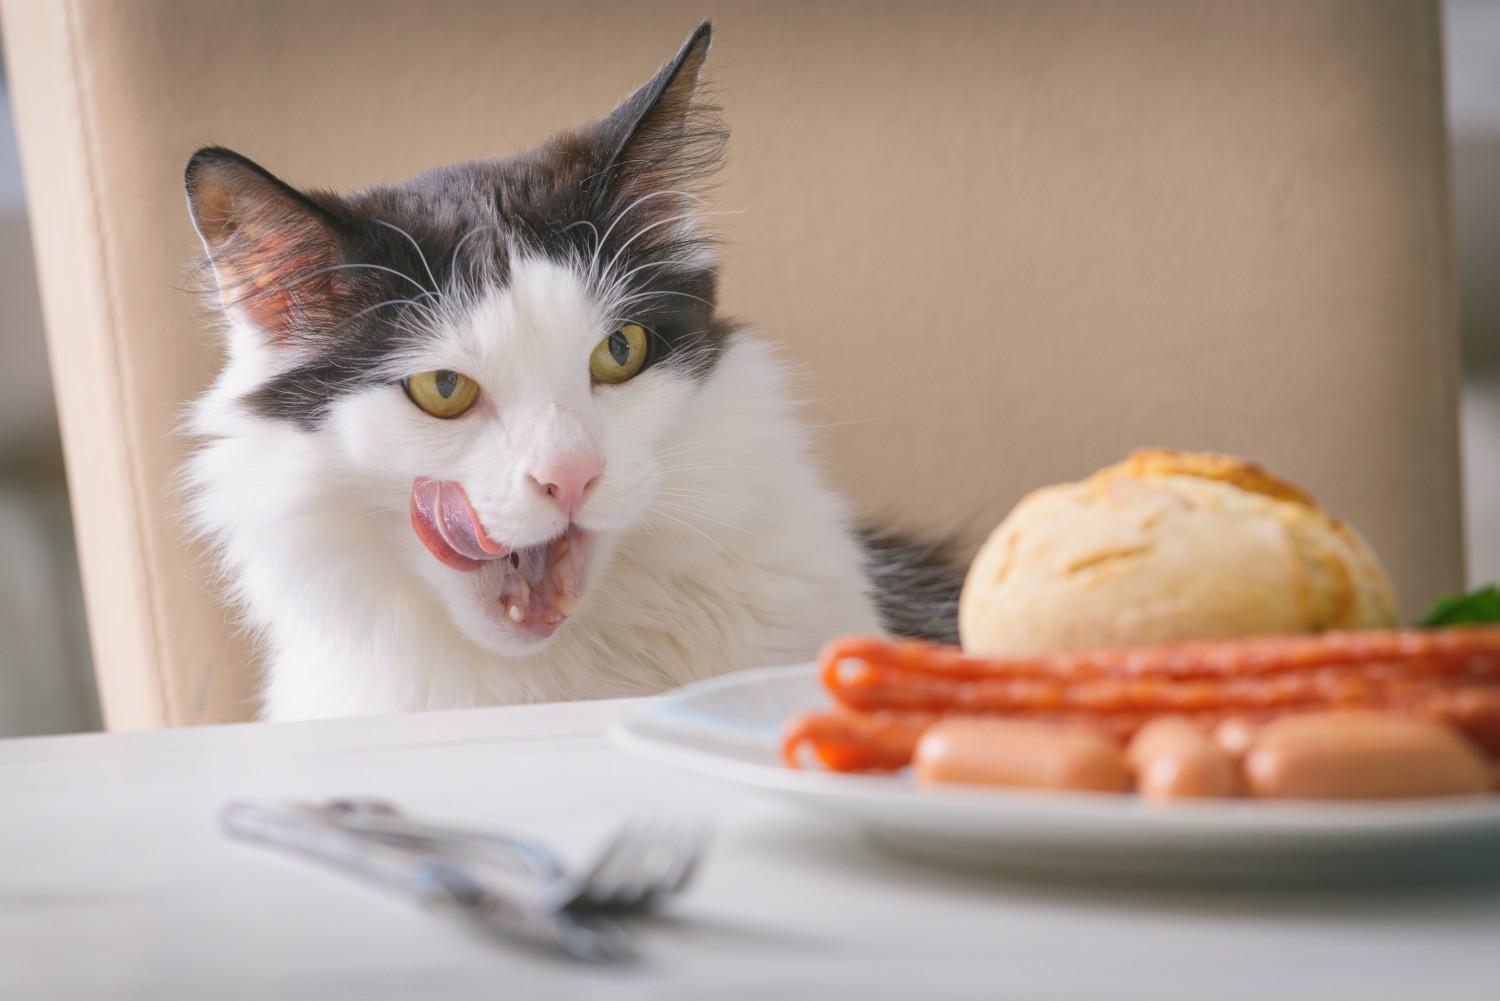 Cat Licking Its Lips at Food